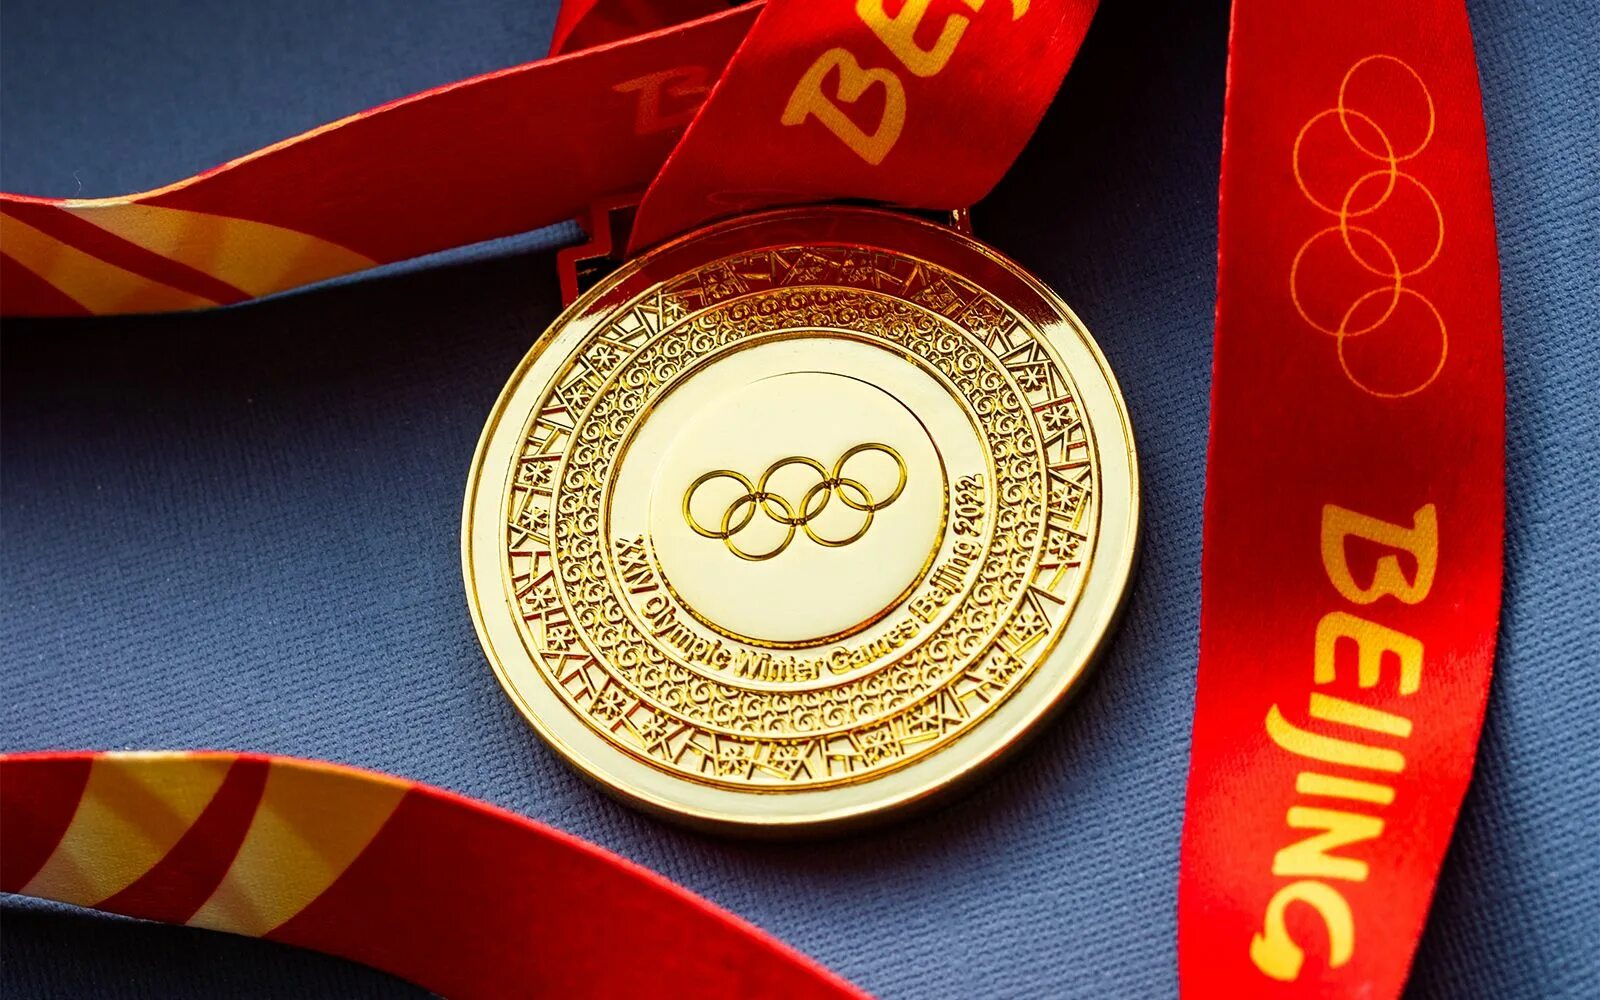 Вторая золотая медаль. Олимпийские медали в Пекине 2022. Золотая Олимпийская медаль Пекин 2022. Олимпийские награды в Пекине 2022. Золотая медаль Олимпийских игр 2022.